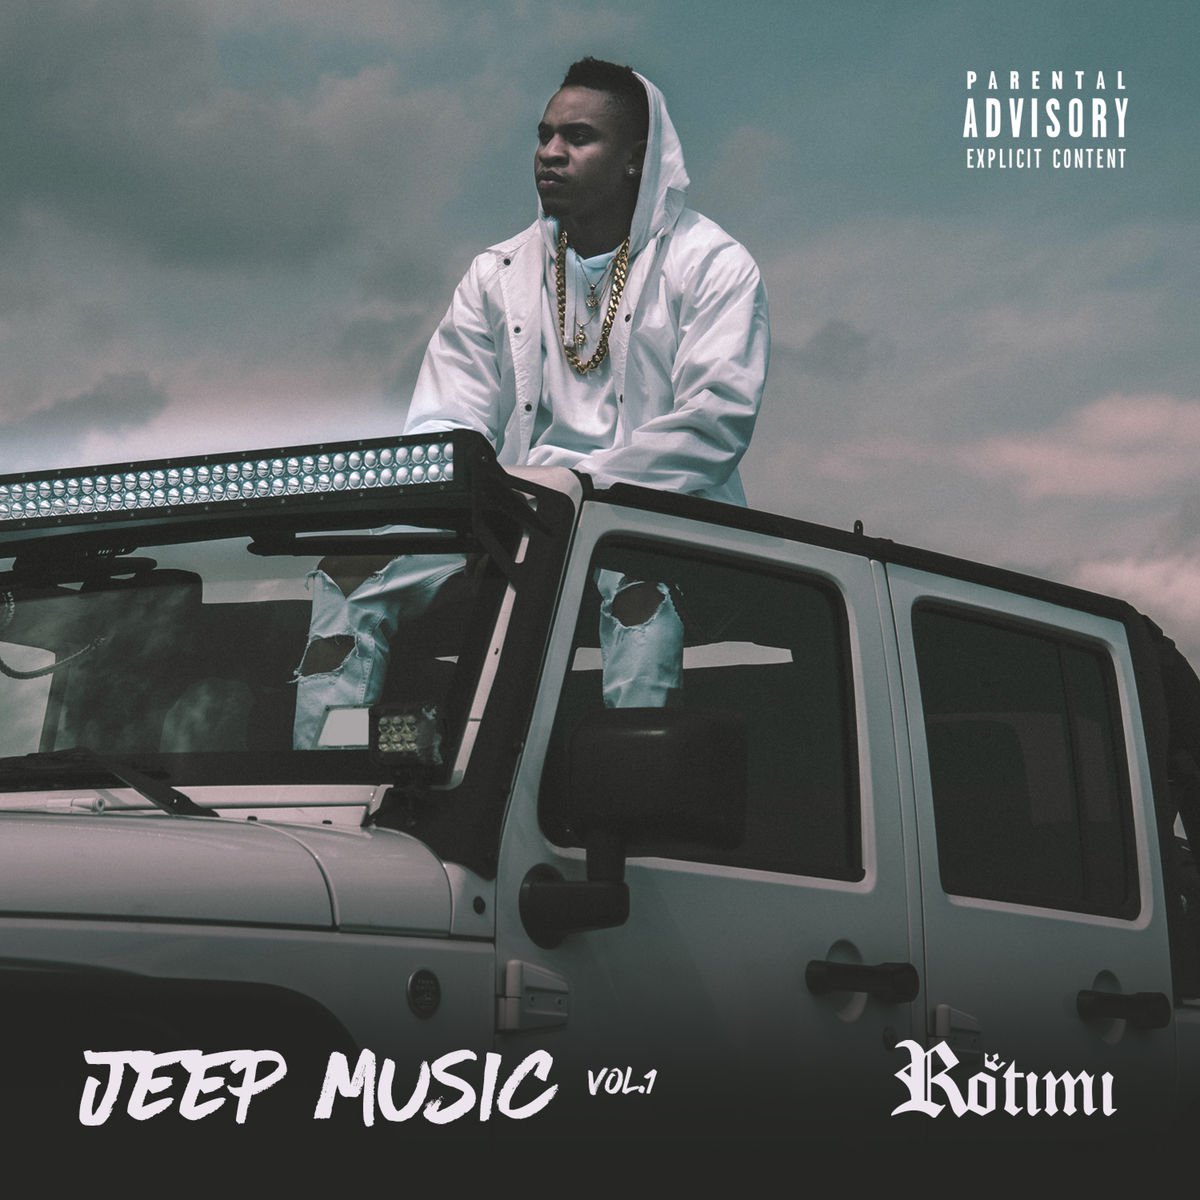 rotimi jeep music vol 1